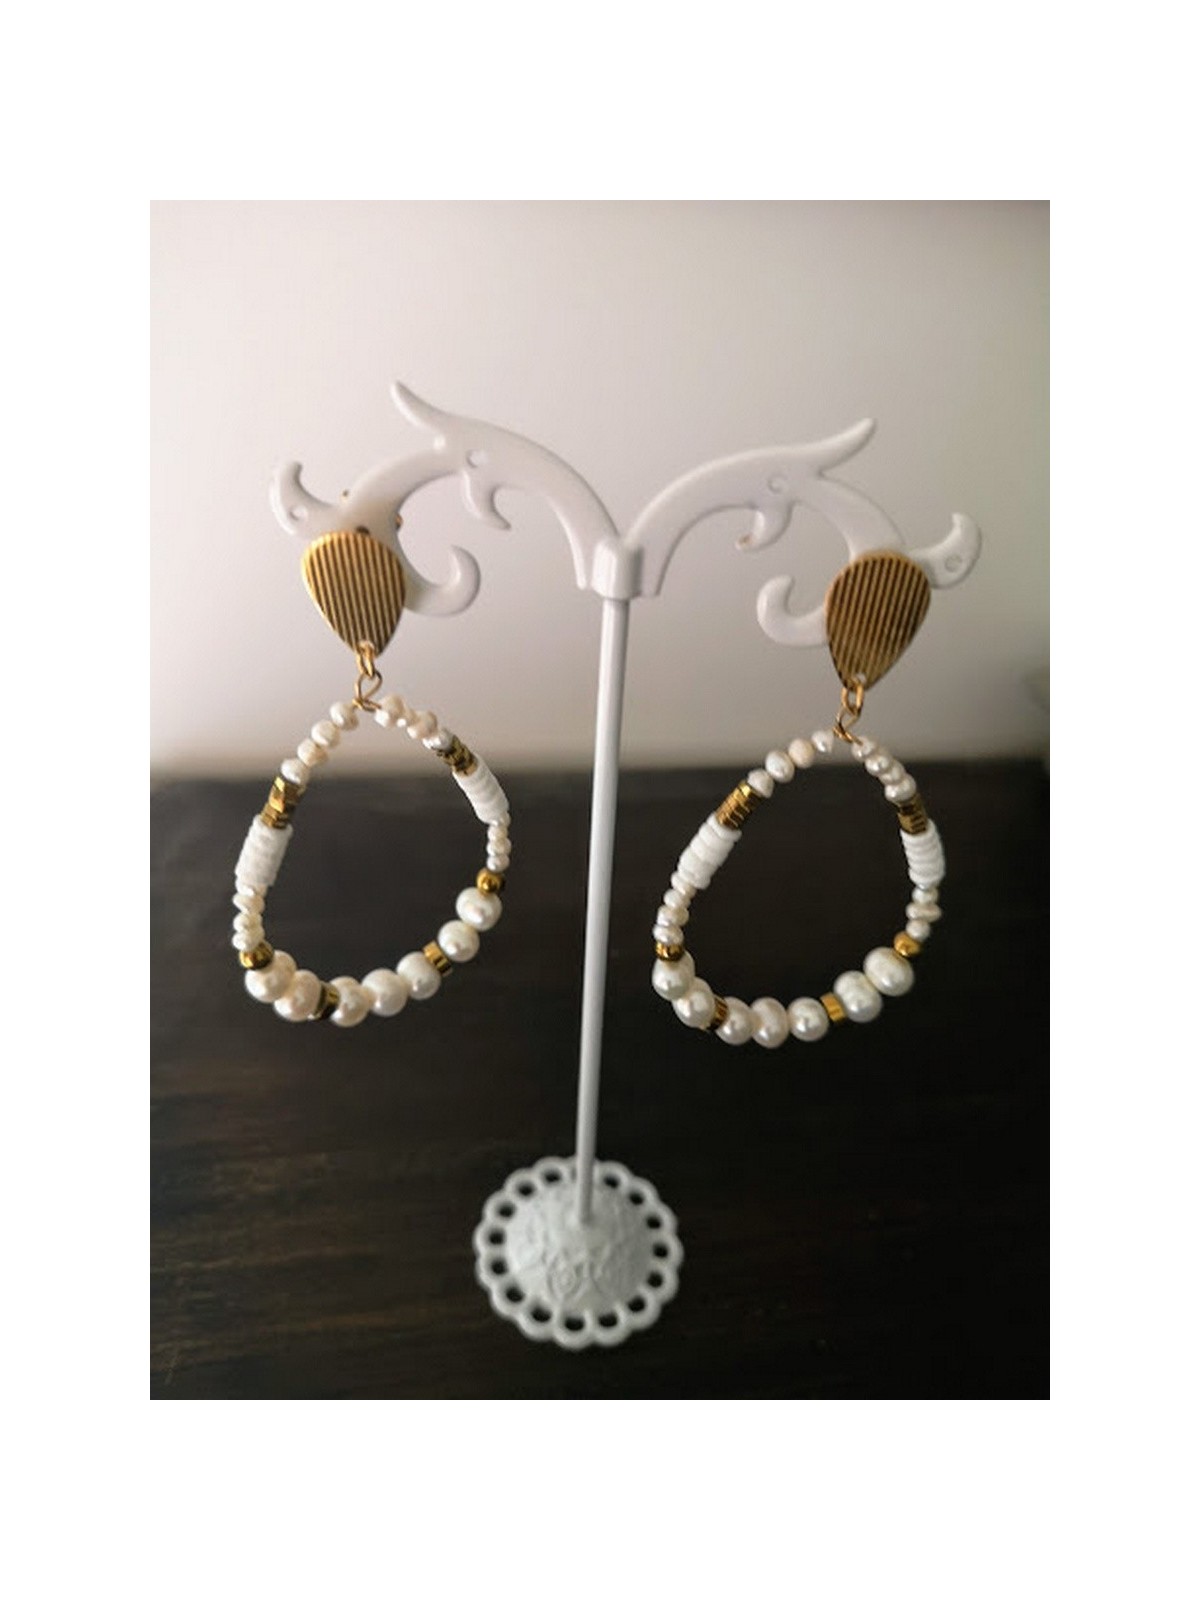 Boucles d'oreilles avec perles blanches et détails dorés | 1 vue portée | Tilleulmenthe boutique de mode femme en ligne